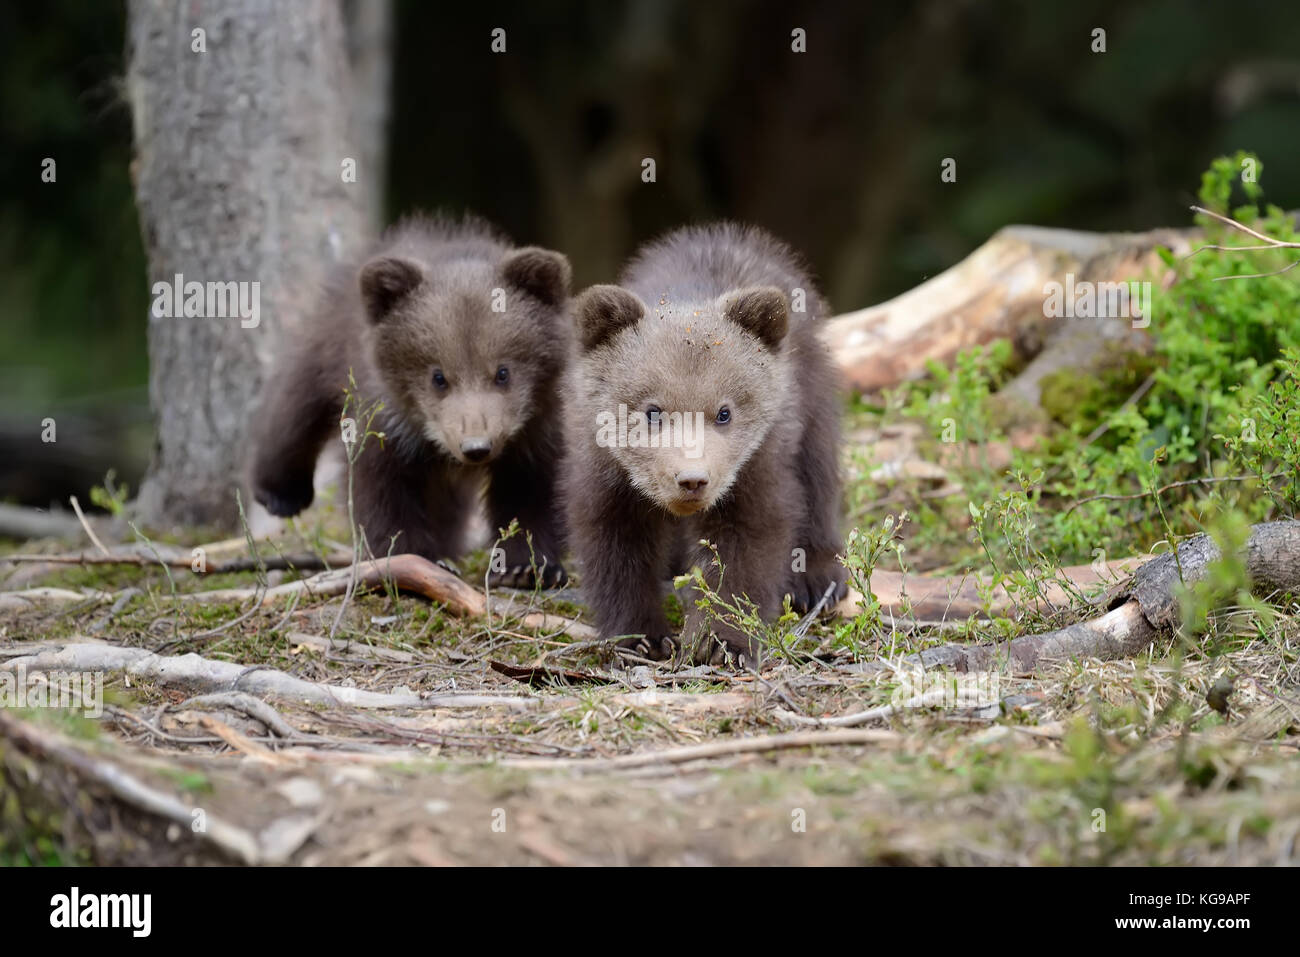 Giovani orso bruno nella foresta. ritratto di orso bruno. animale in natura habitat. cub di orso bruno senza madre. Foto Stock